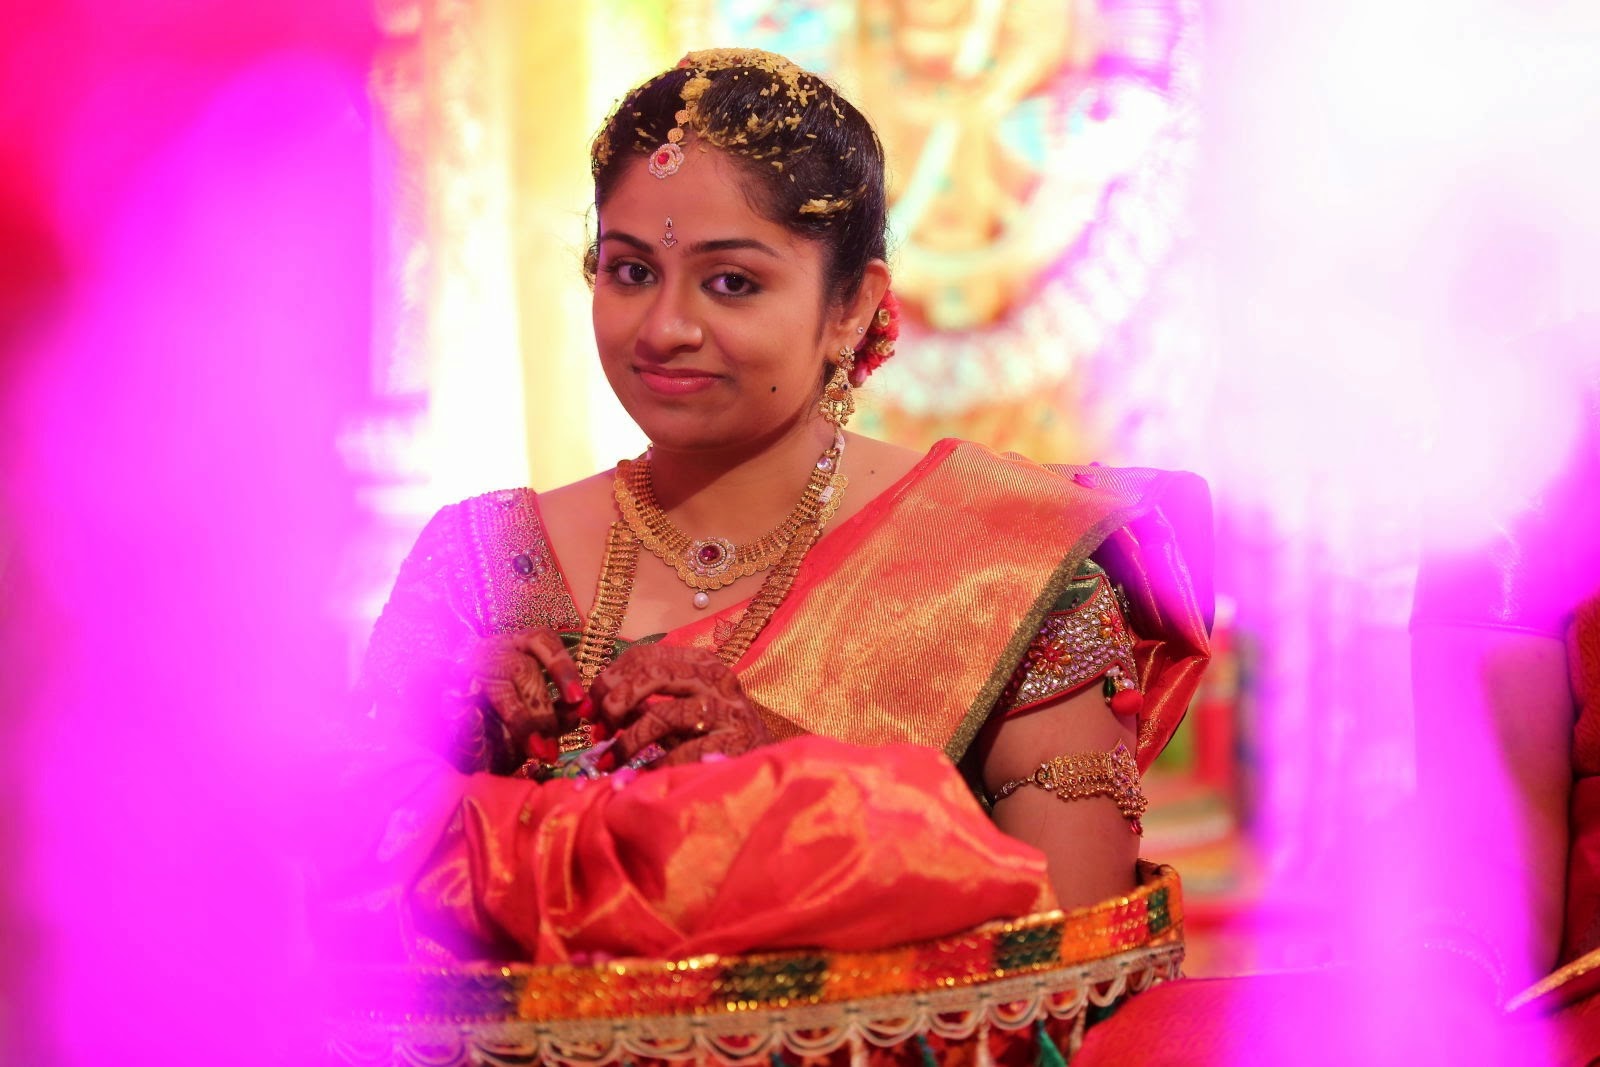 héroe fondos de escritorio heroína galería de fotos,sari,rosado,ceremonia,tradicion,evento